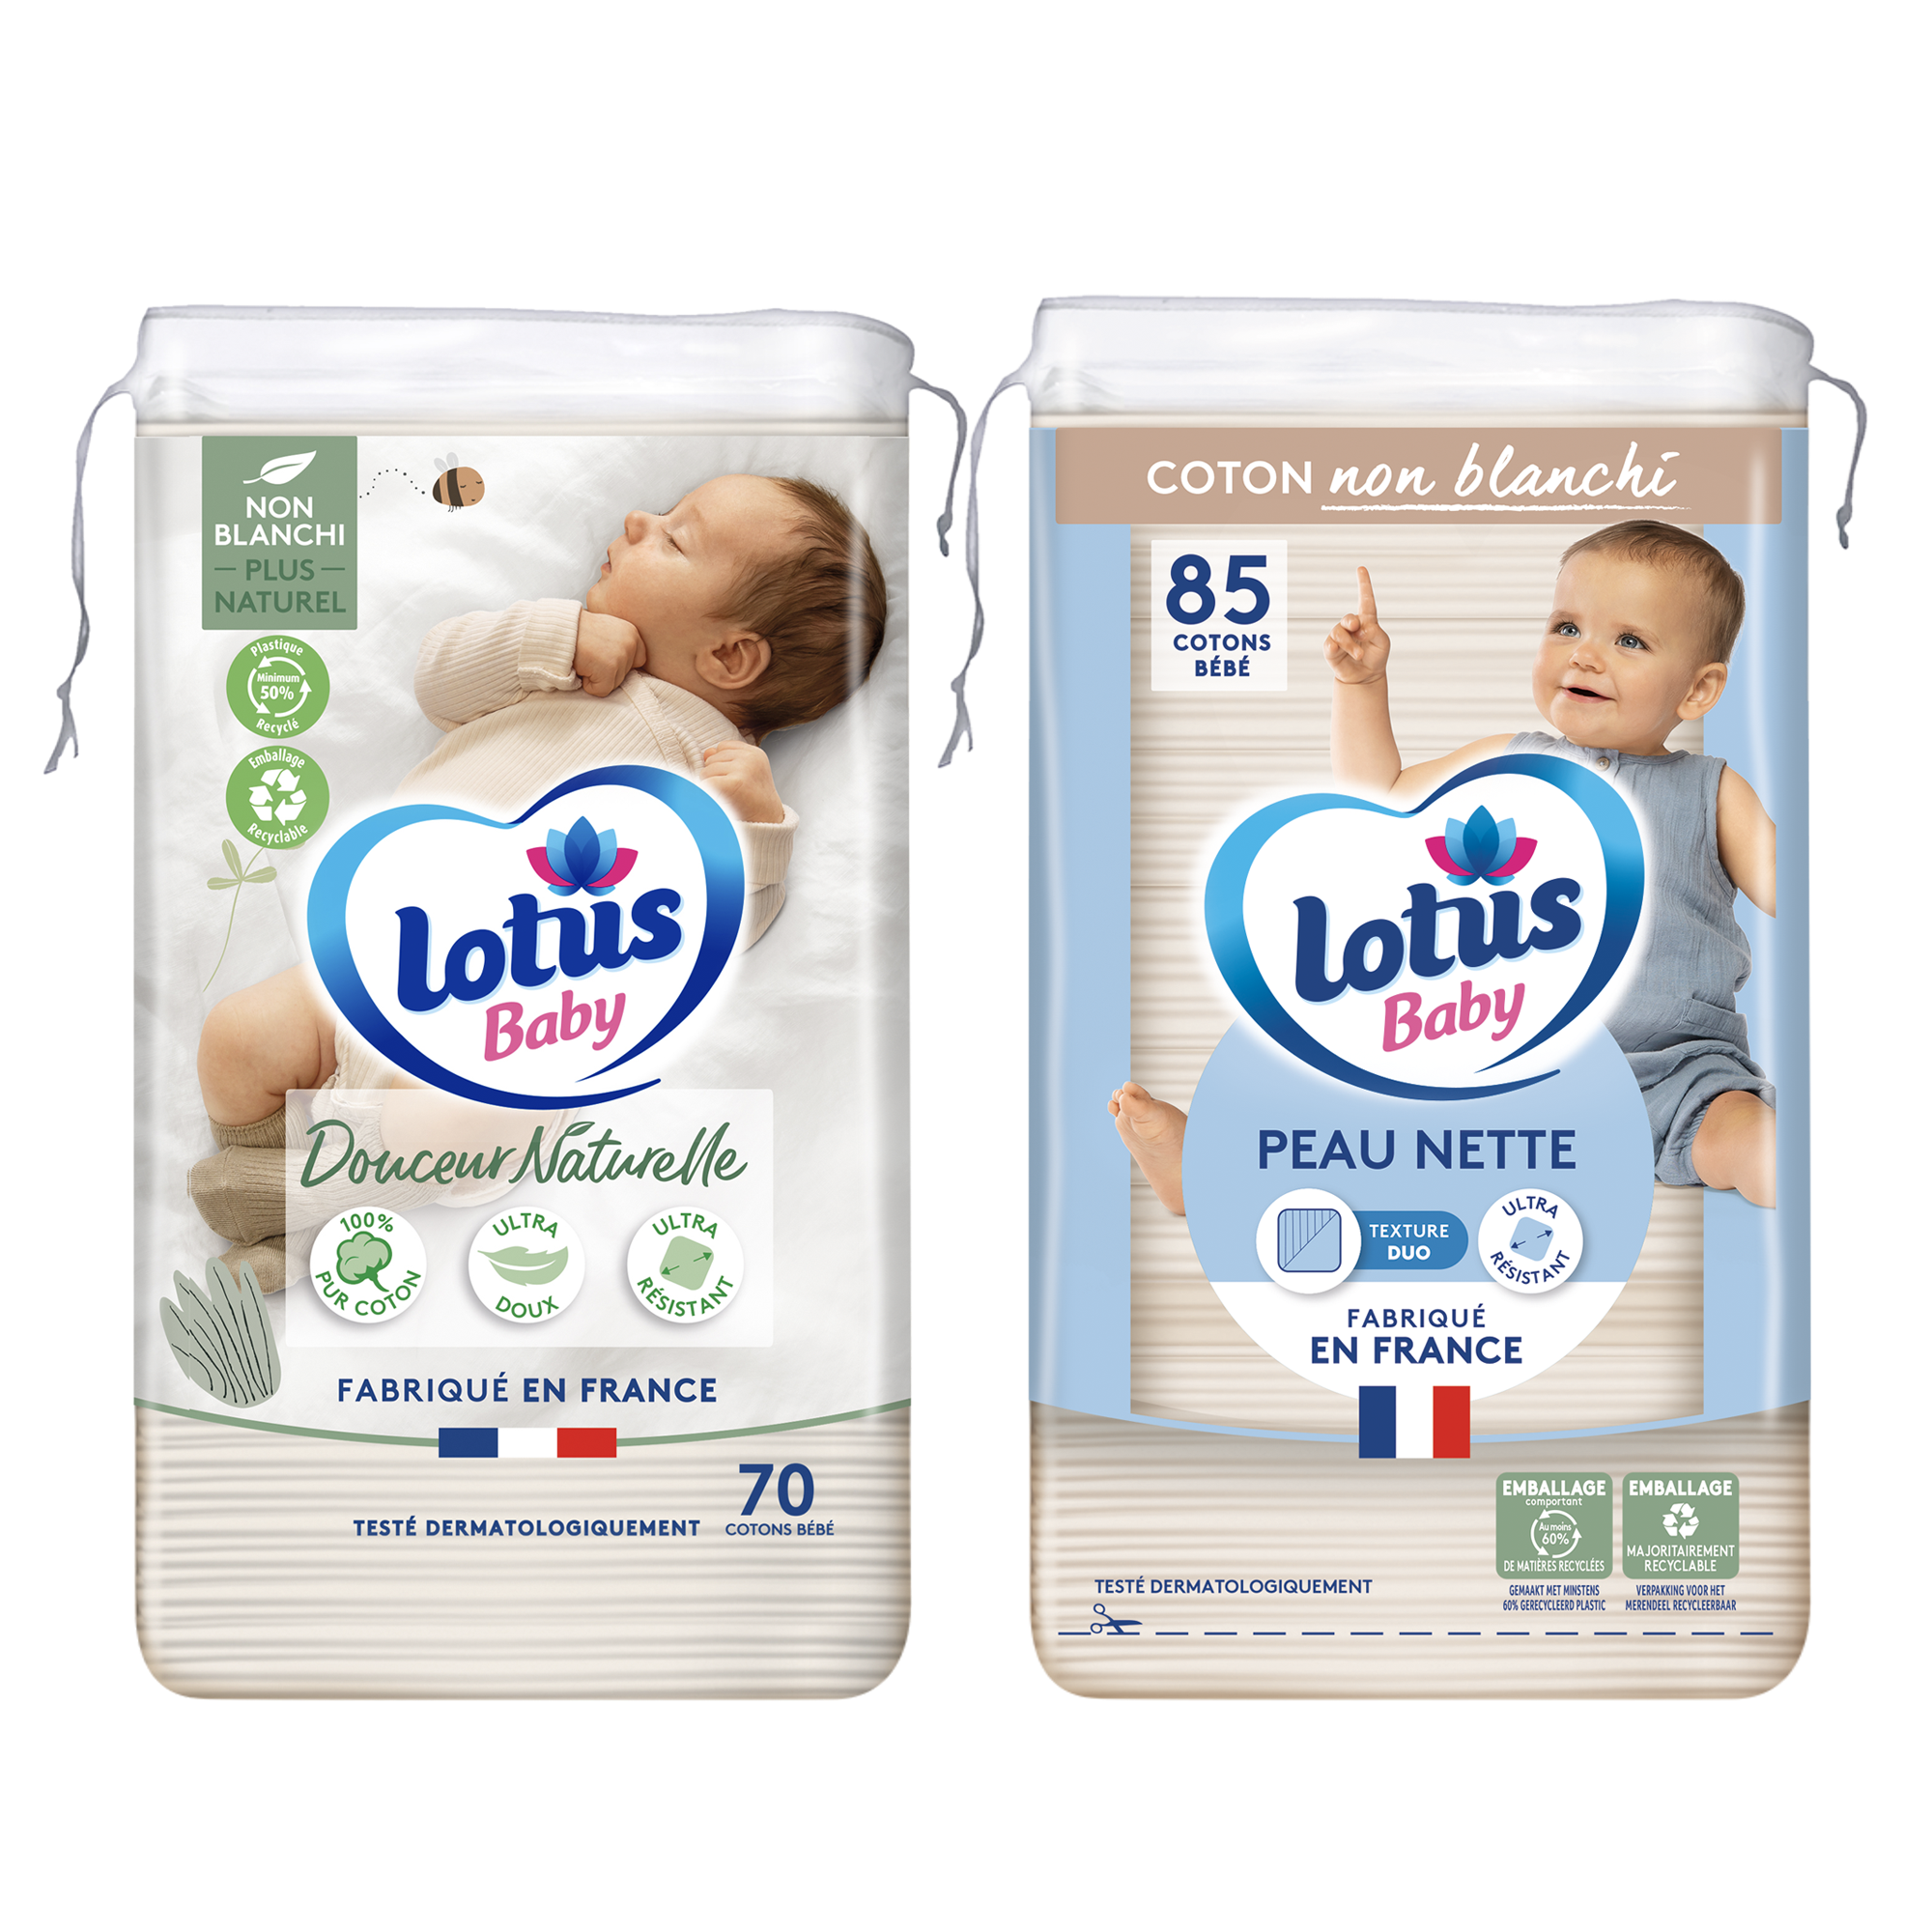 Lotus Baby Peau Nette - Cotons bébé - 85 Cotons : : Bébé